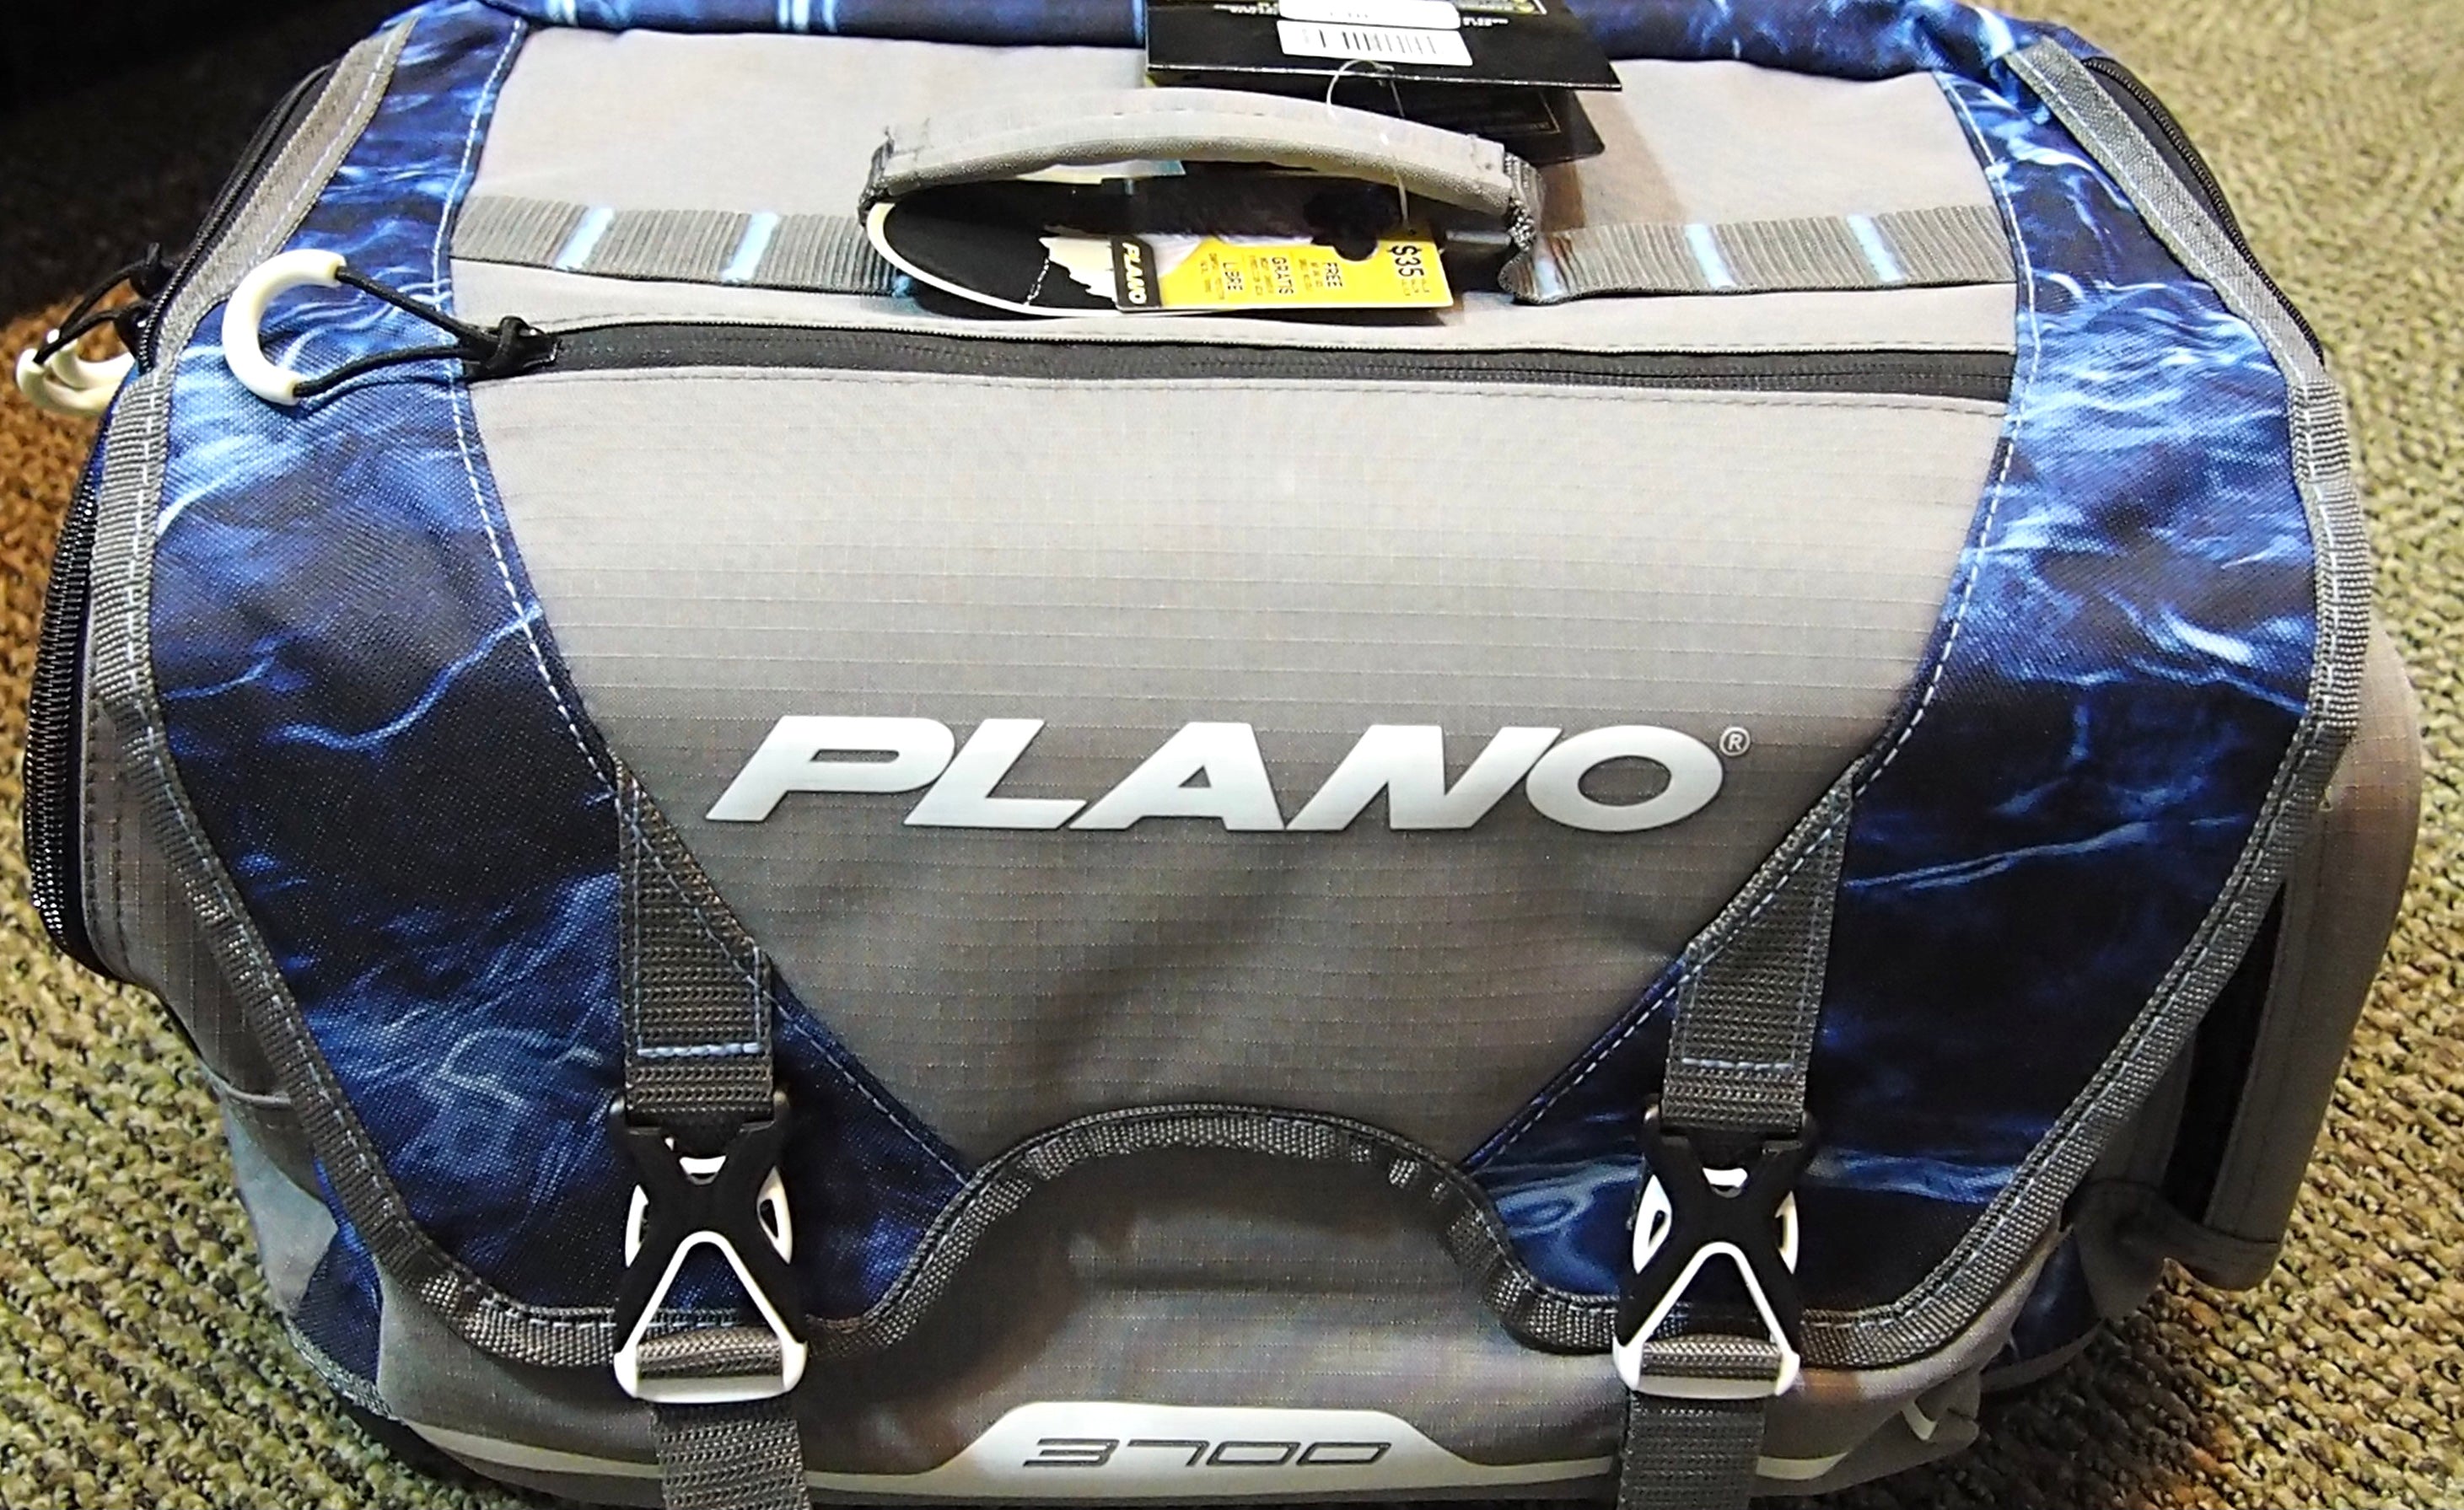 B-Series 3600 Tackle Bag - Plano